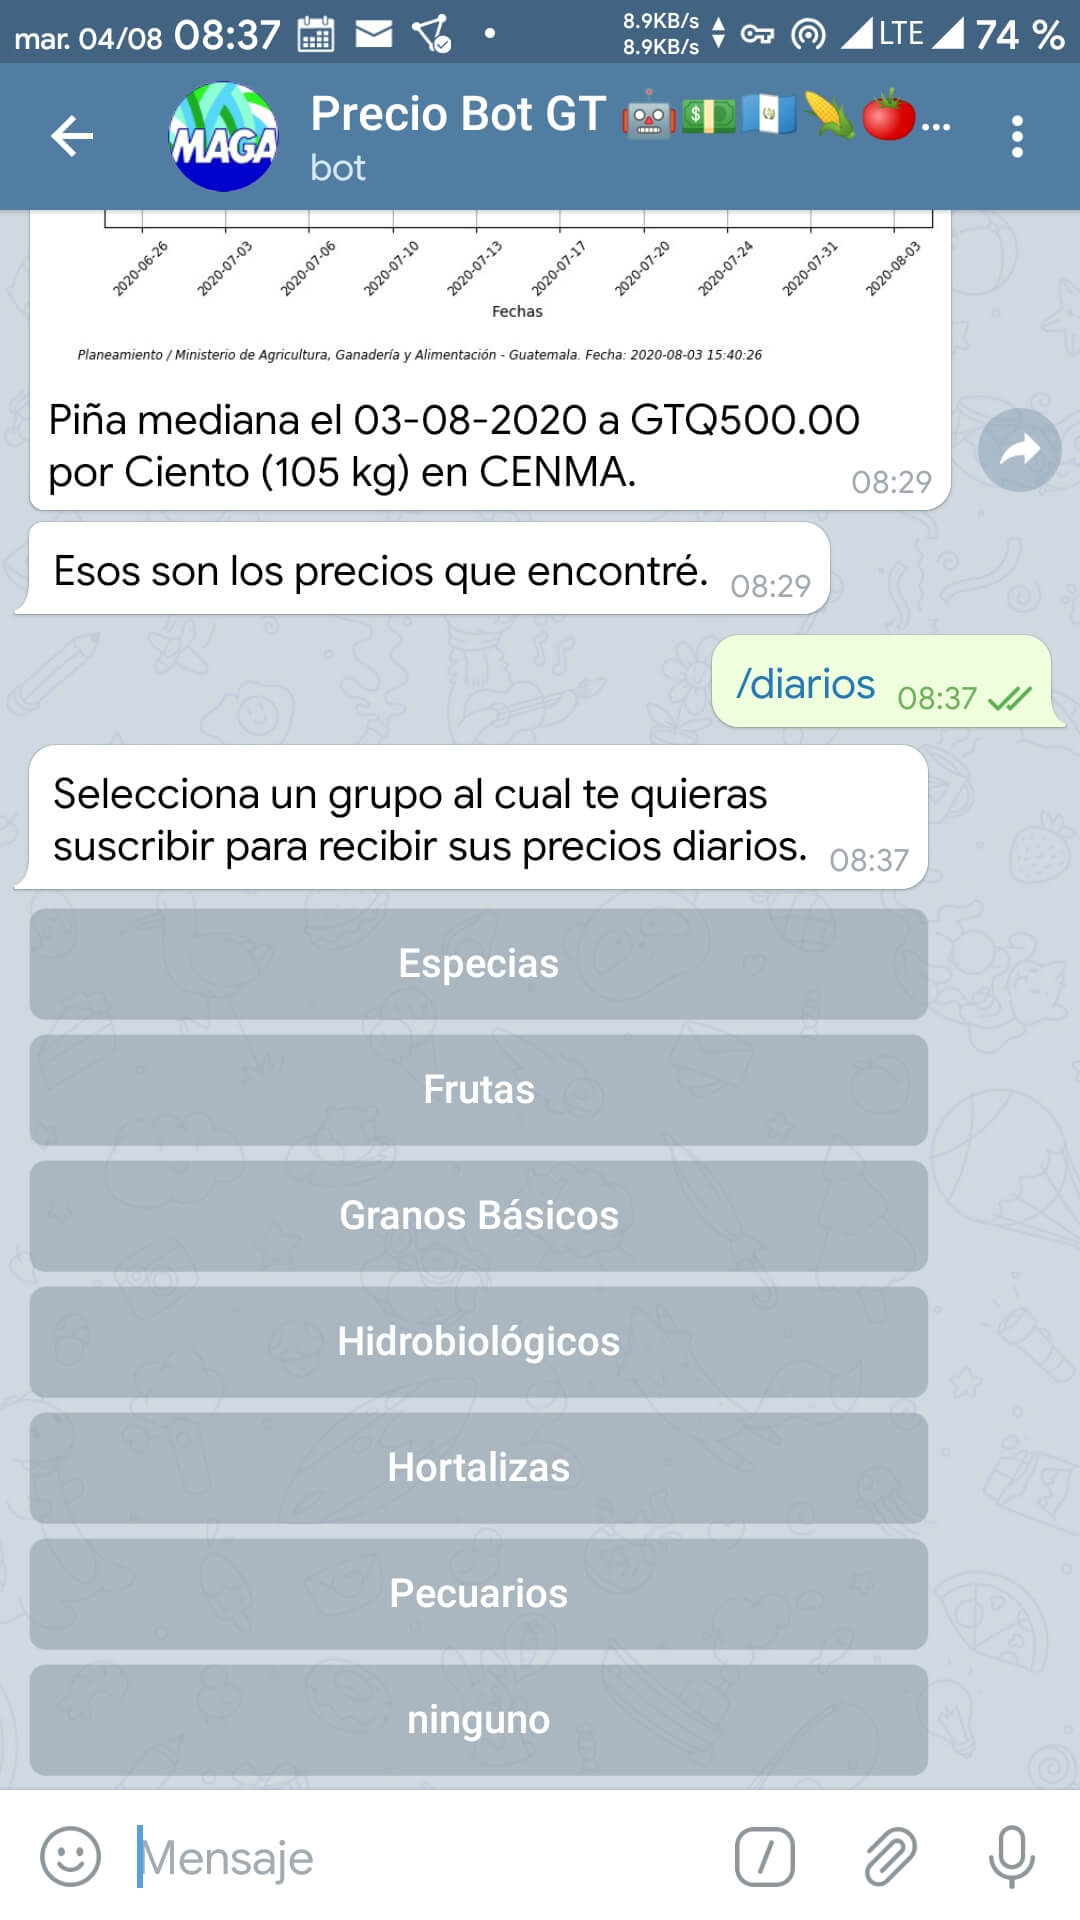 Uso del comando /diarios en el chat bot de precios vía Telegram